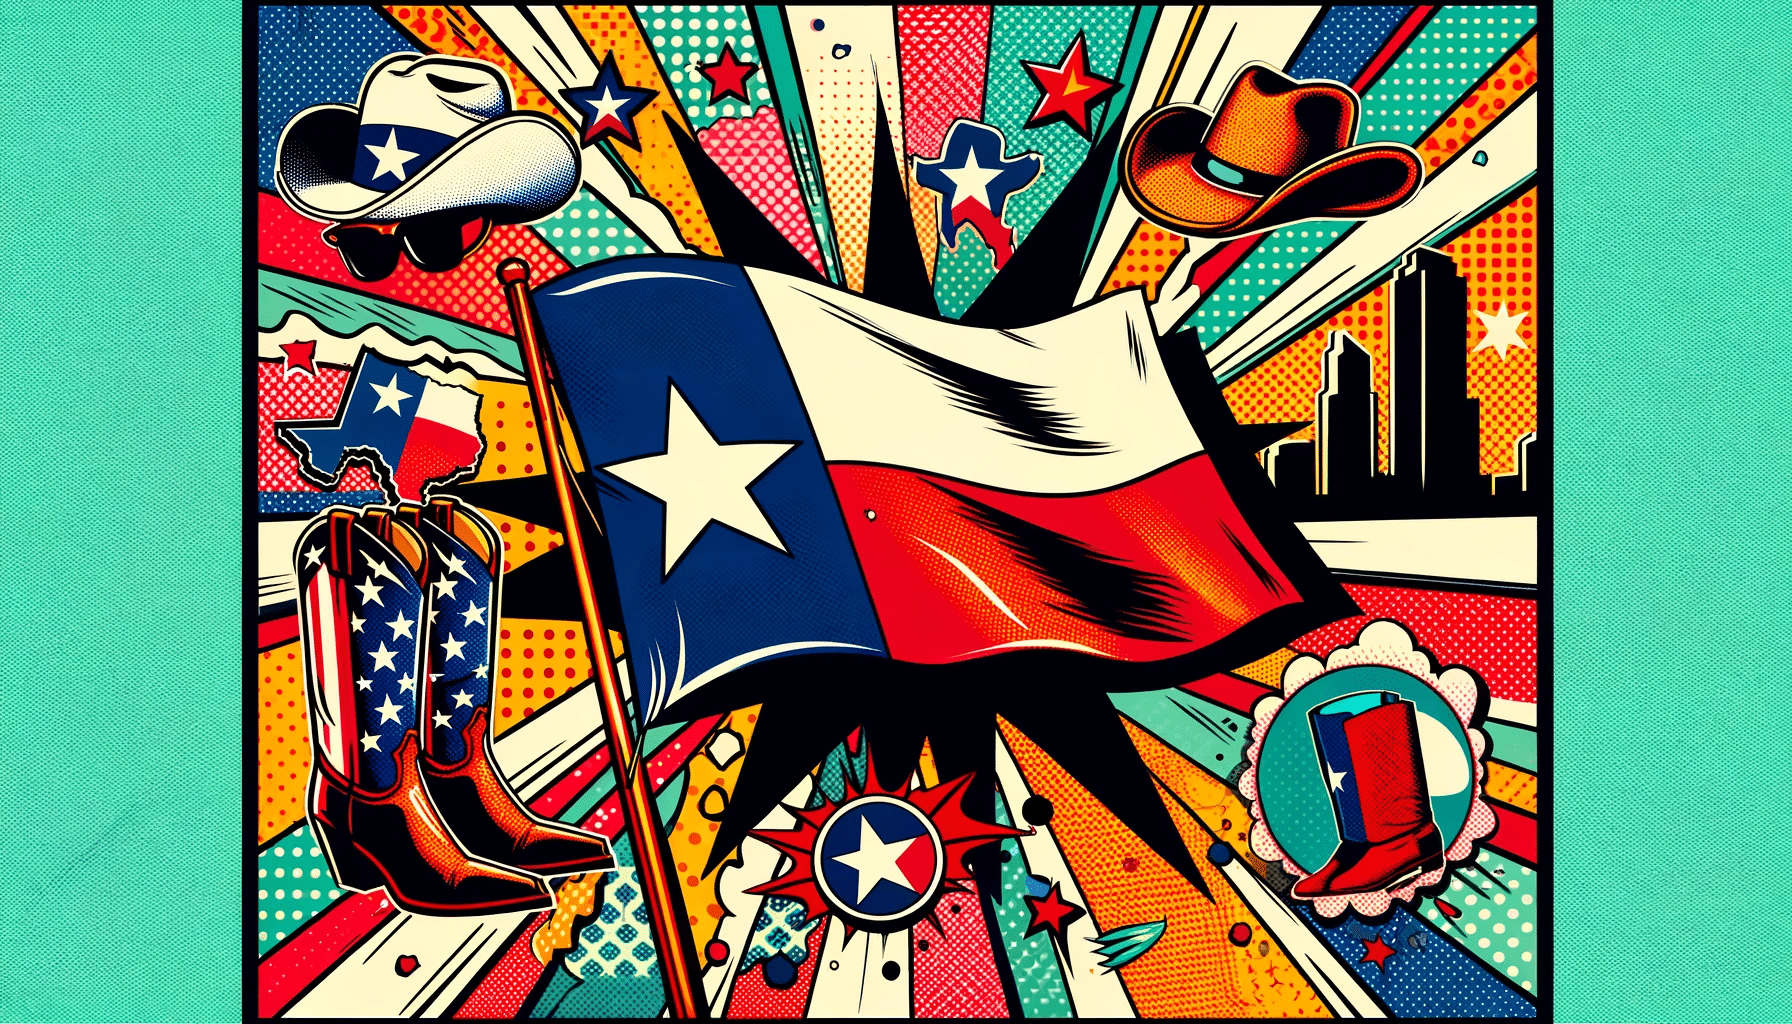 Texas pop art